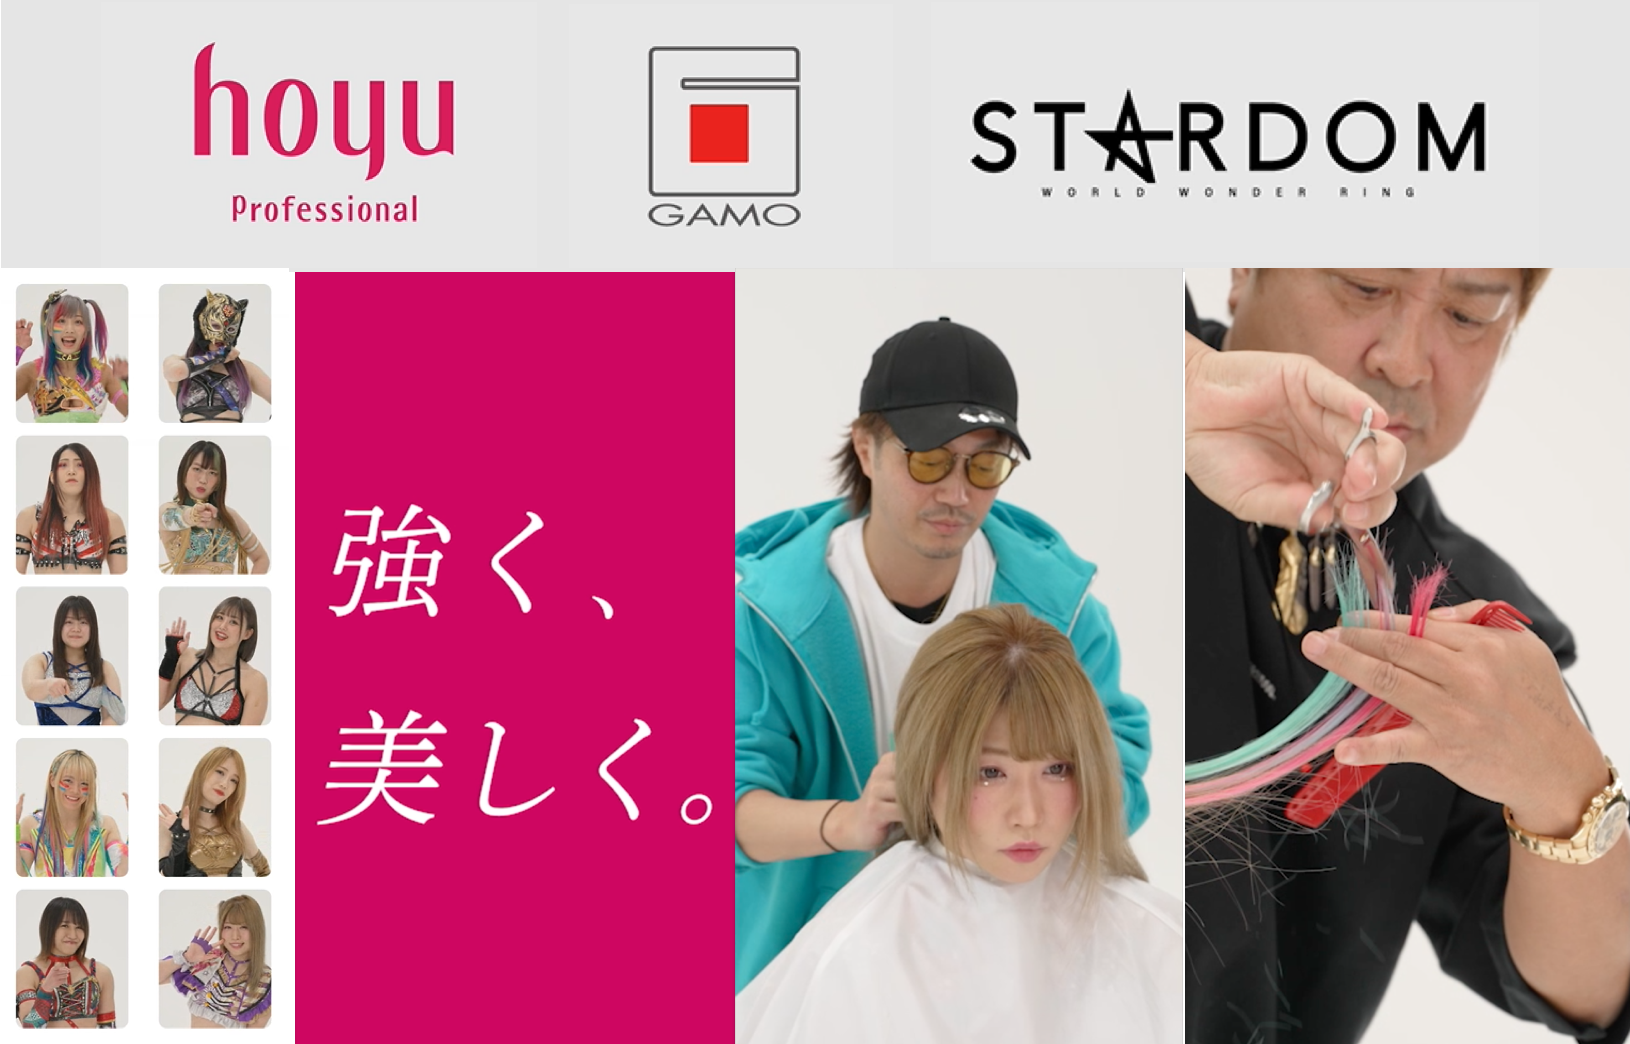 『hoyu×GAMO×STARDOM』コラボCMを4月18日より掲載開始　
美容師の技術で女子レスラーが強く美しい女性に変身！